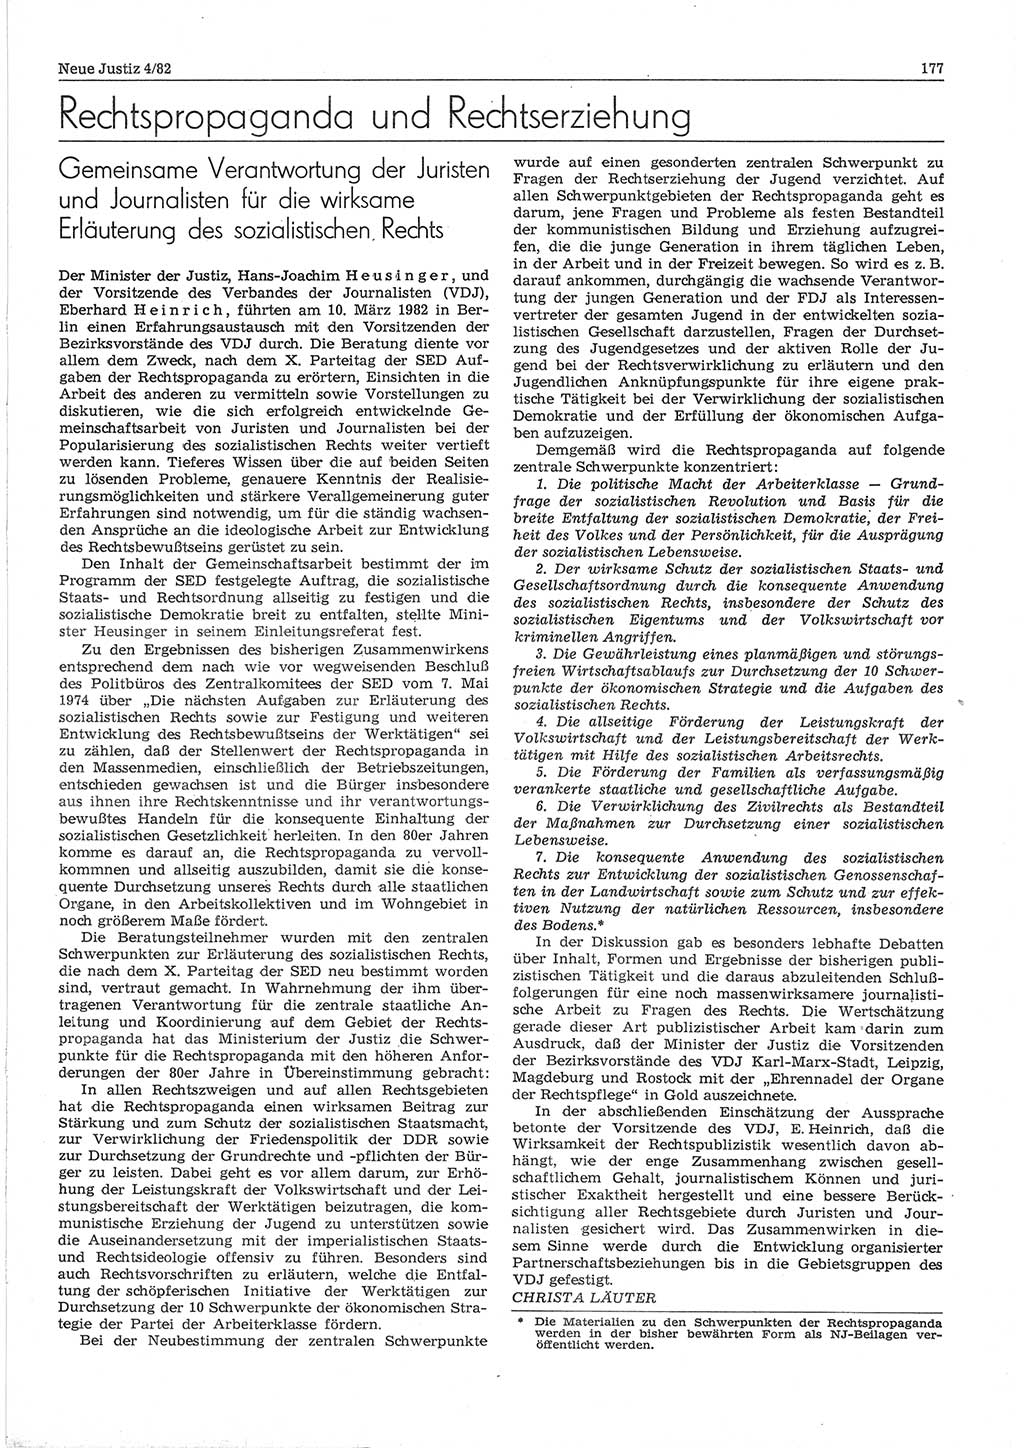 Neue Justiz (NJ), Zeitschrift für sozialistisches Recht und Gesetzlichkeit [Deutsche Demokratische Republik (DDR)], 36. Jahrgang 1982, Seite 177 (NJ DDR 1982, S. 177)